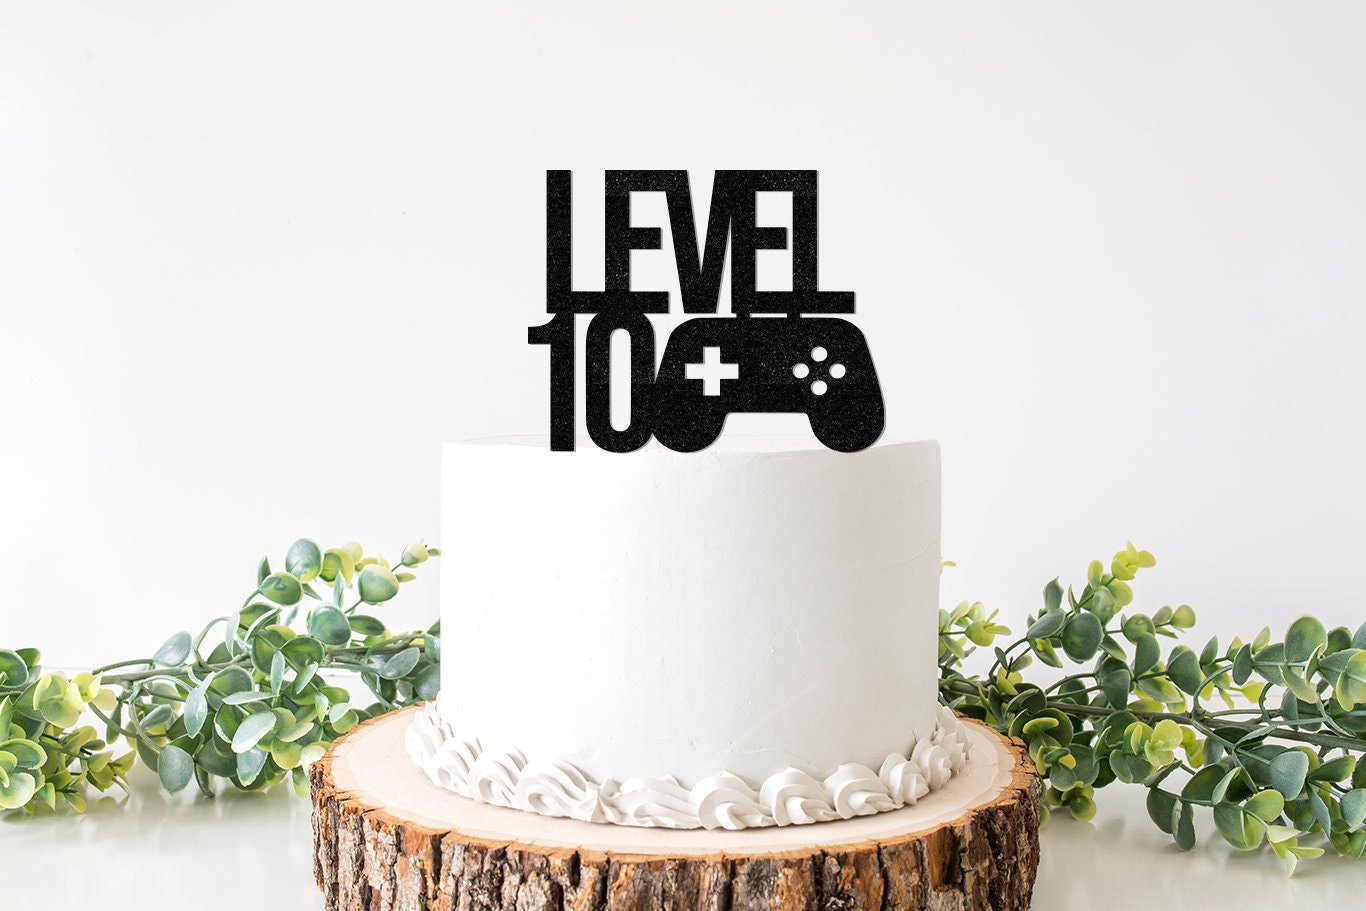 Black Glitter Level 11 Cake Topper - Level Up 11th Birthday Cake